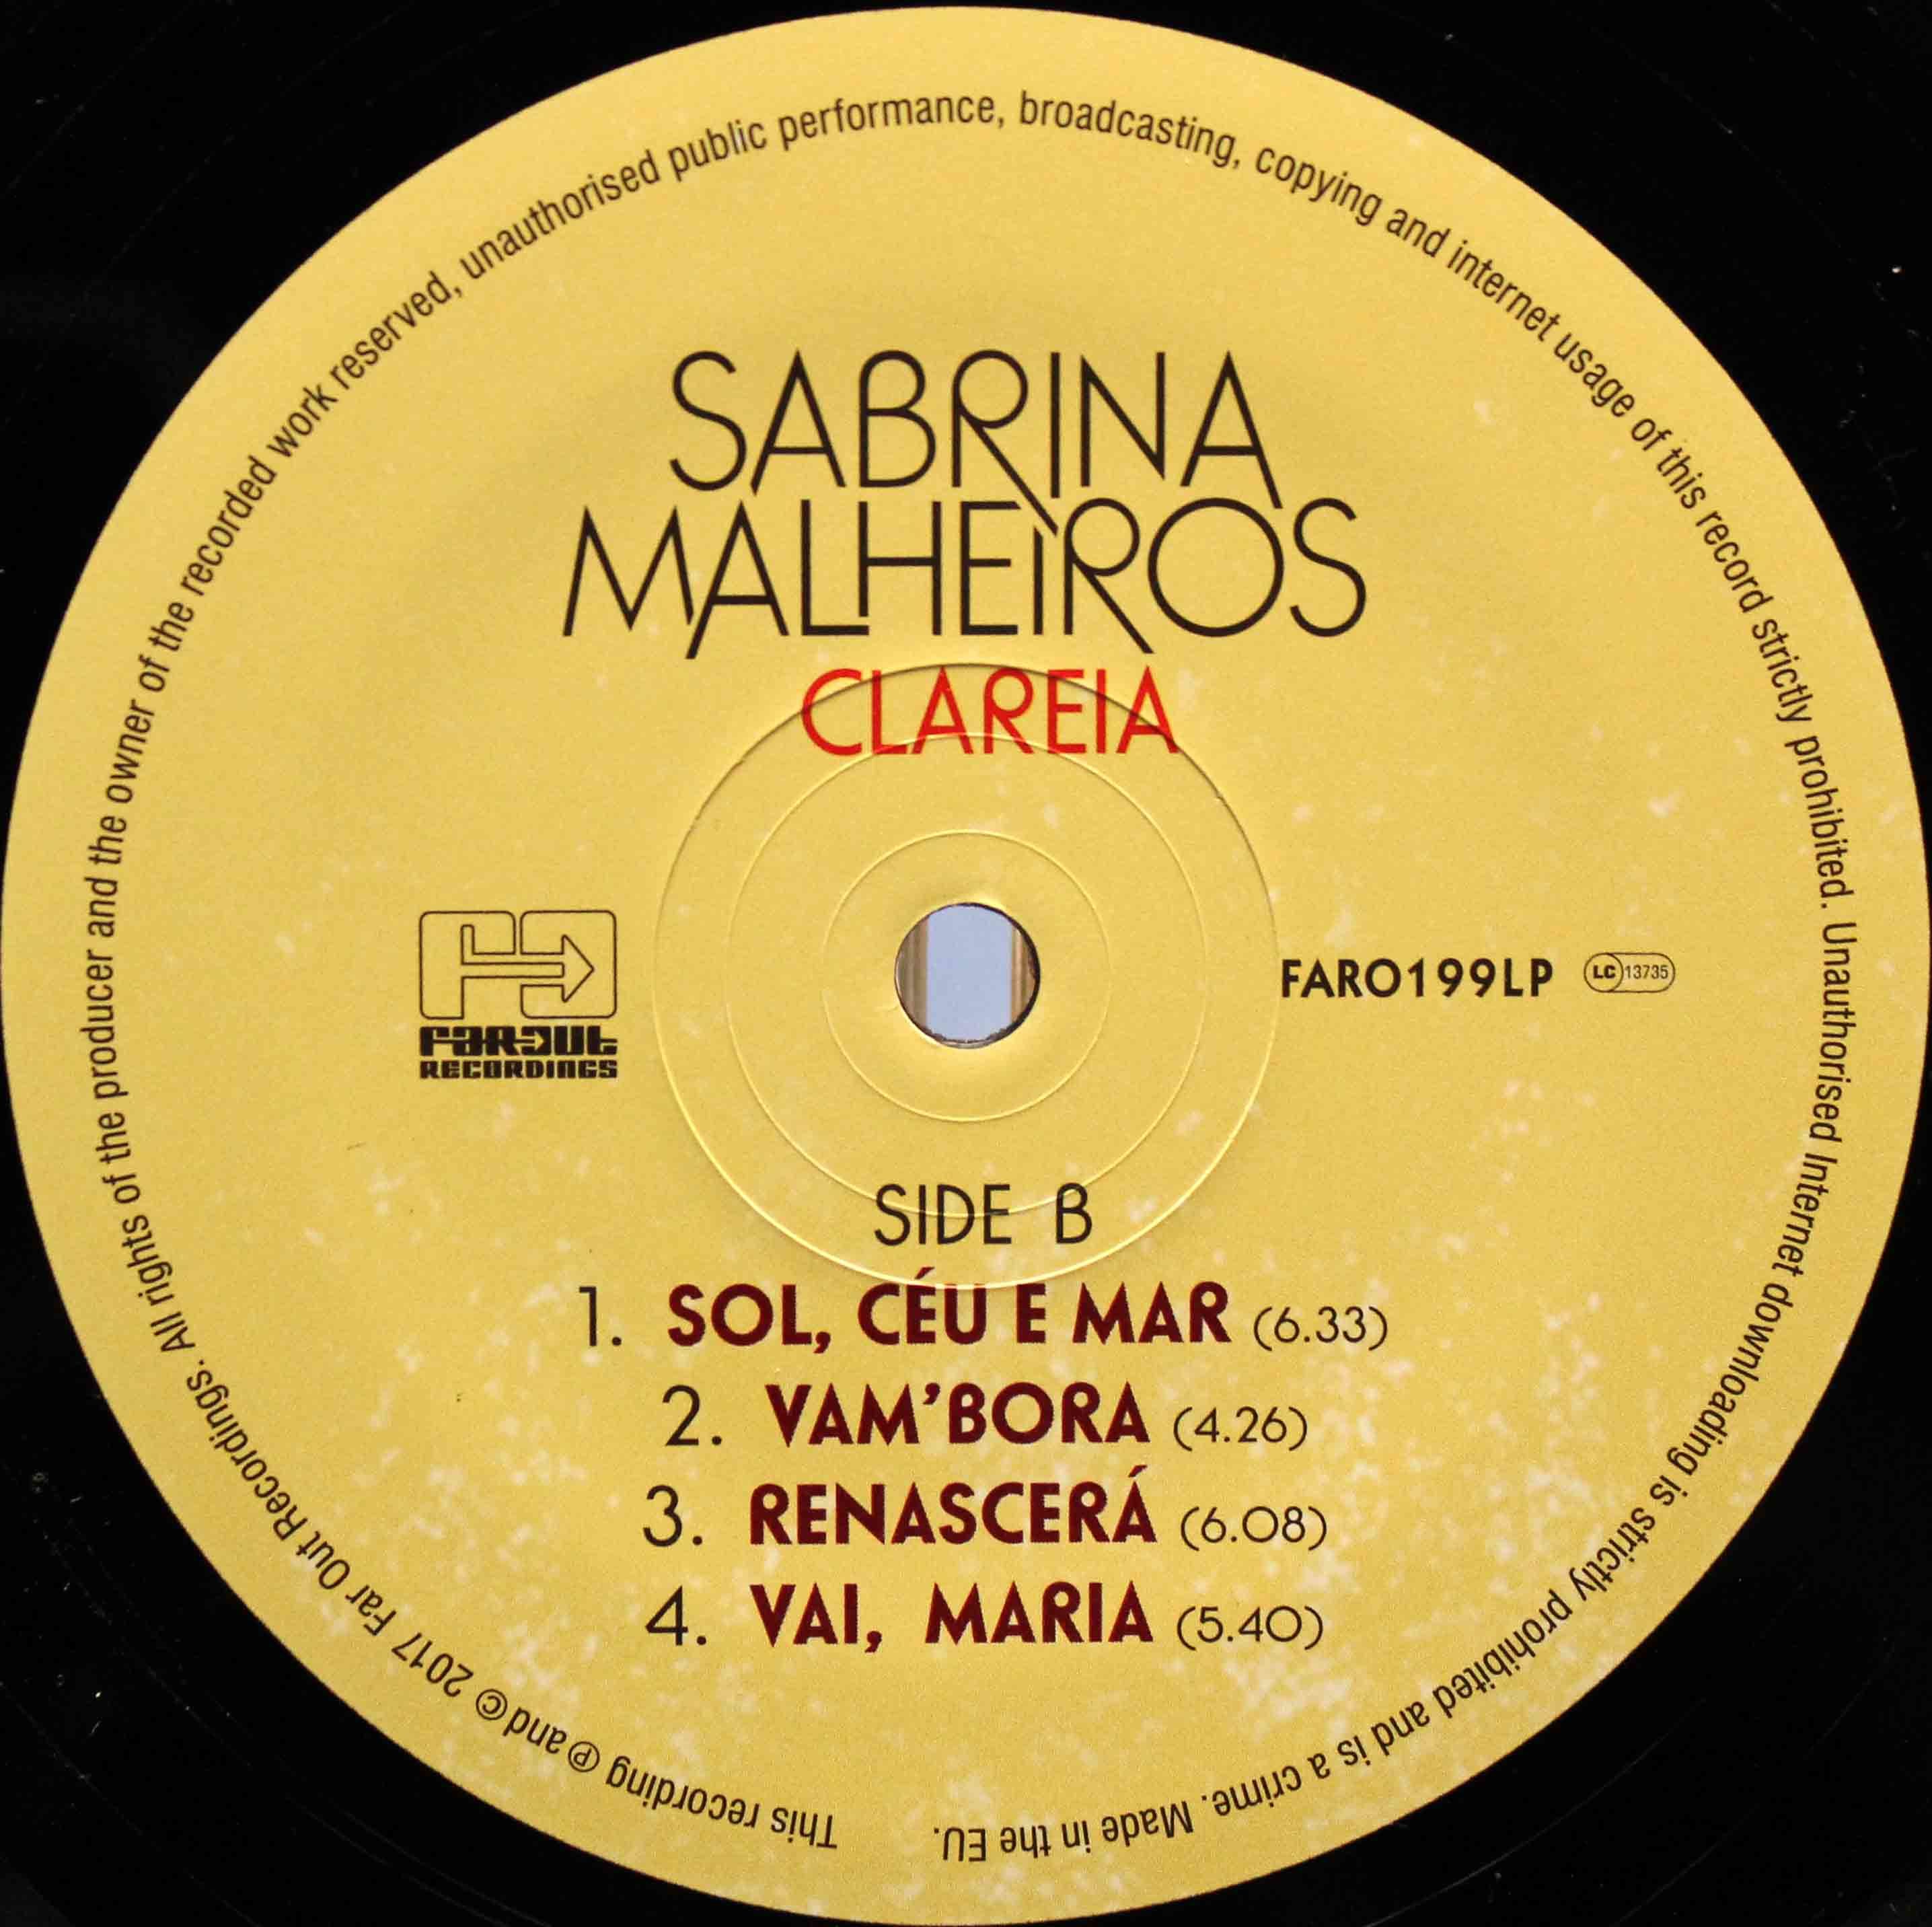 Sabrina Malheiros Clareia 04